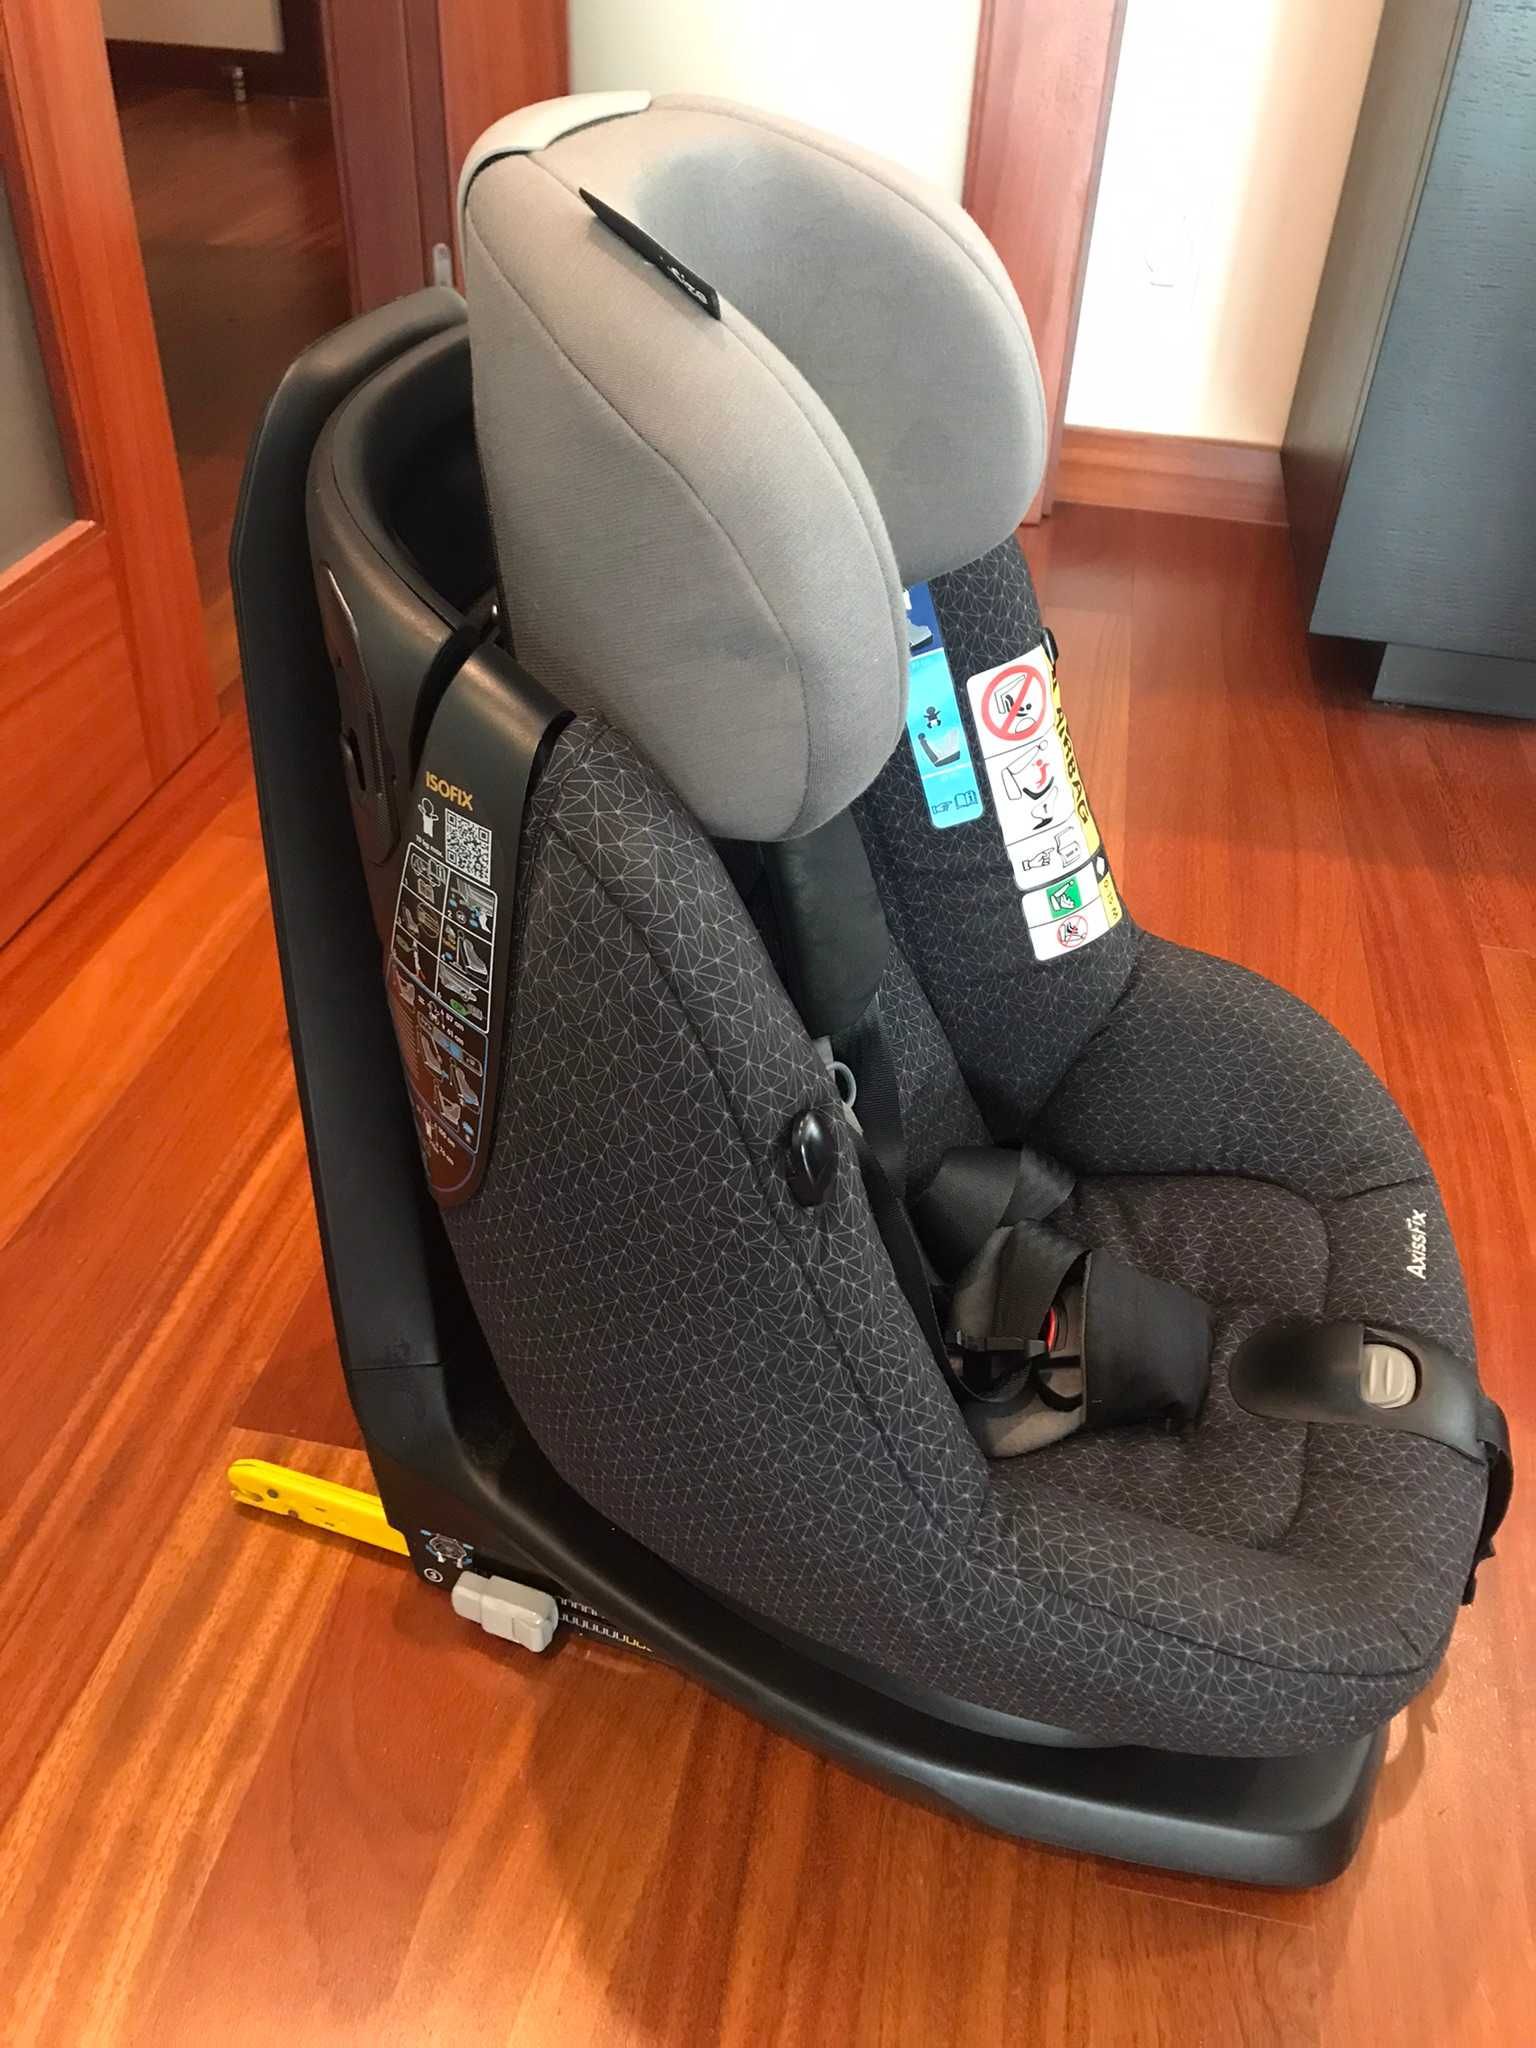 Cadeira rotativa 360 Axissfix Plus Bebeconfort + artigos bébé